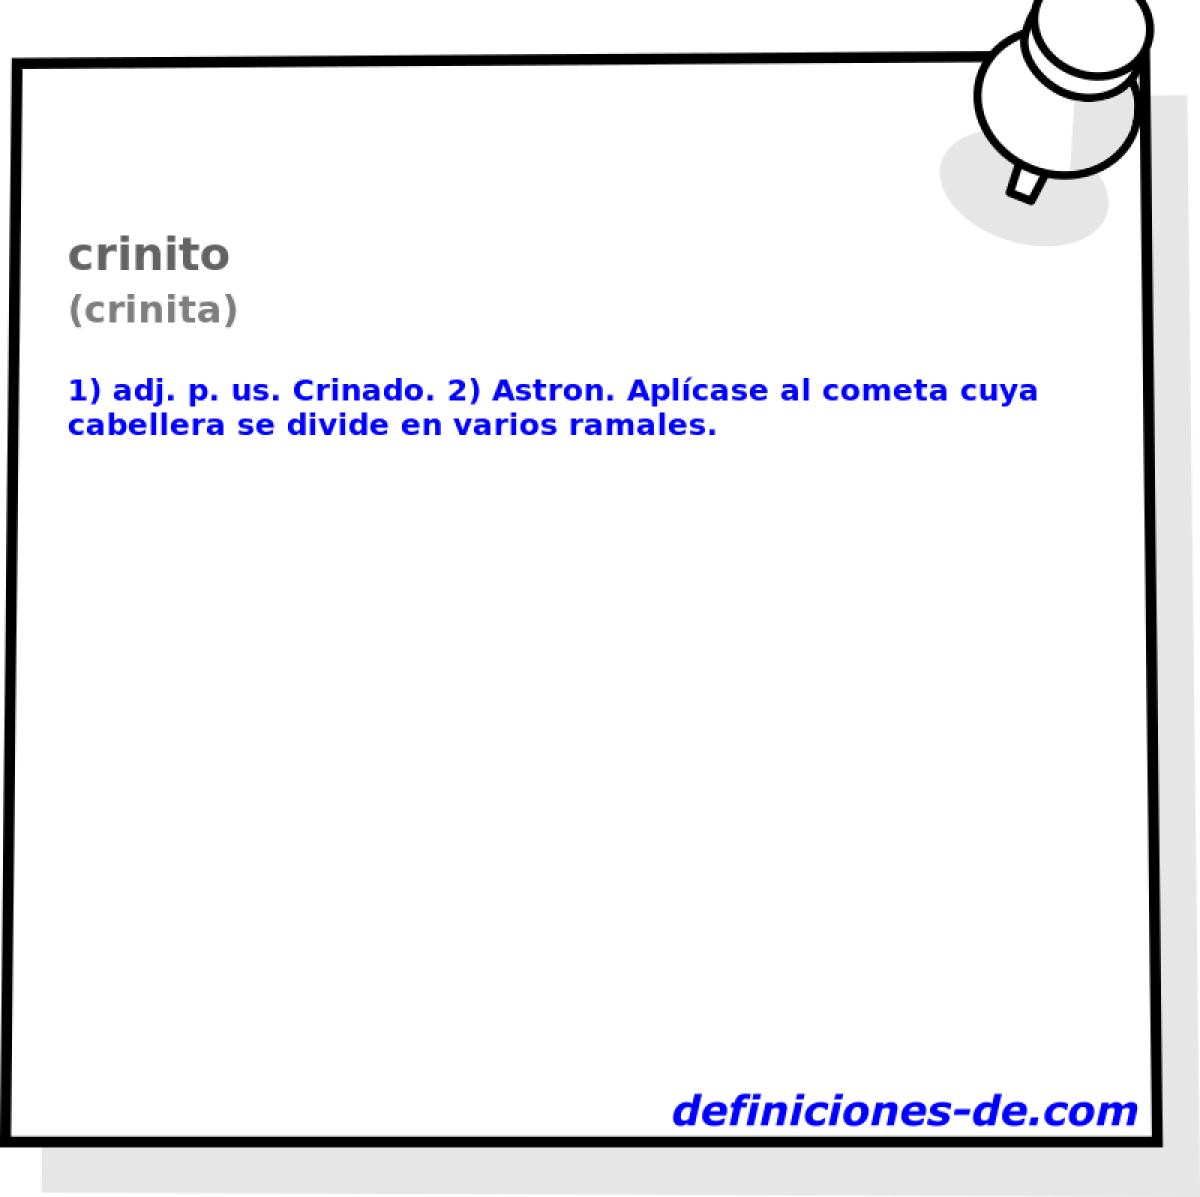 crinito (crinita)